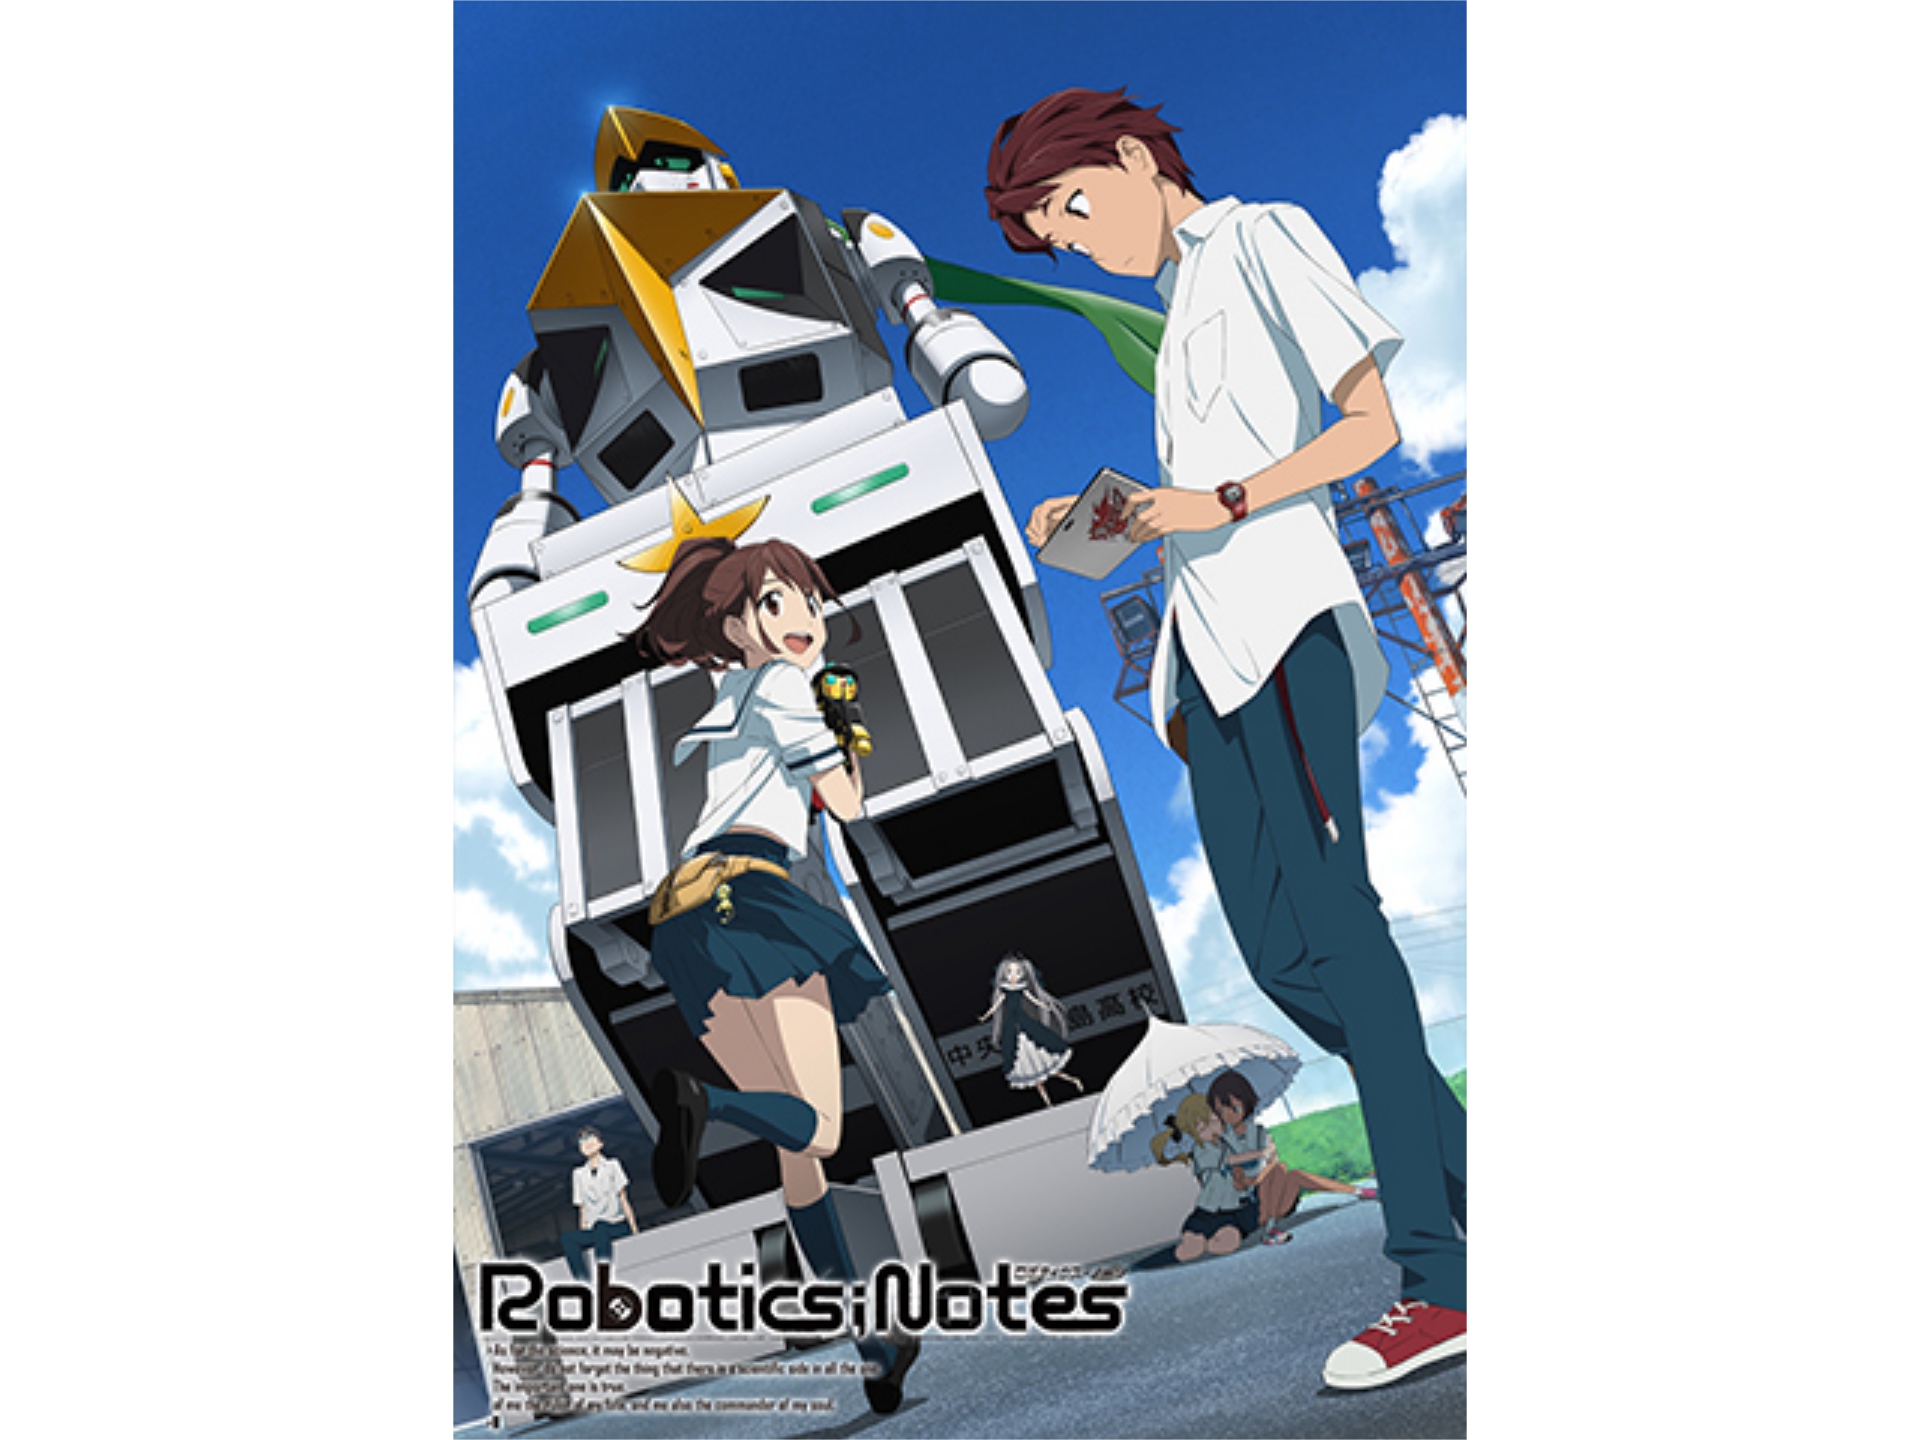 アニメ Robotics Notes の動画まとめ 初月無料 動画配信サービスのビデオマーケット